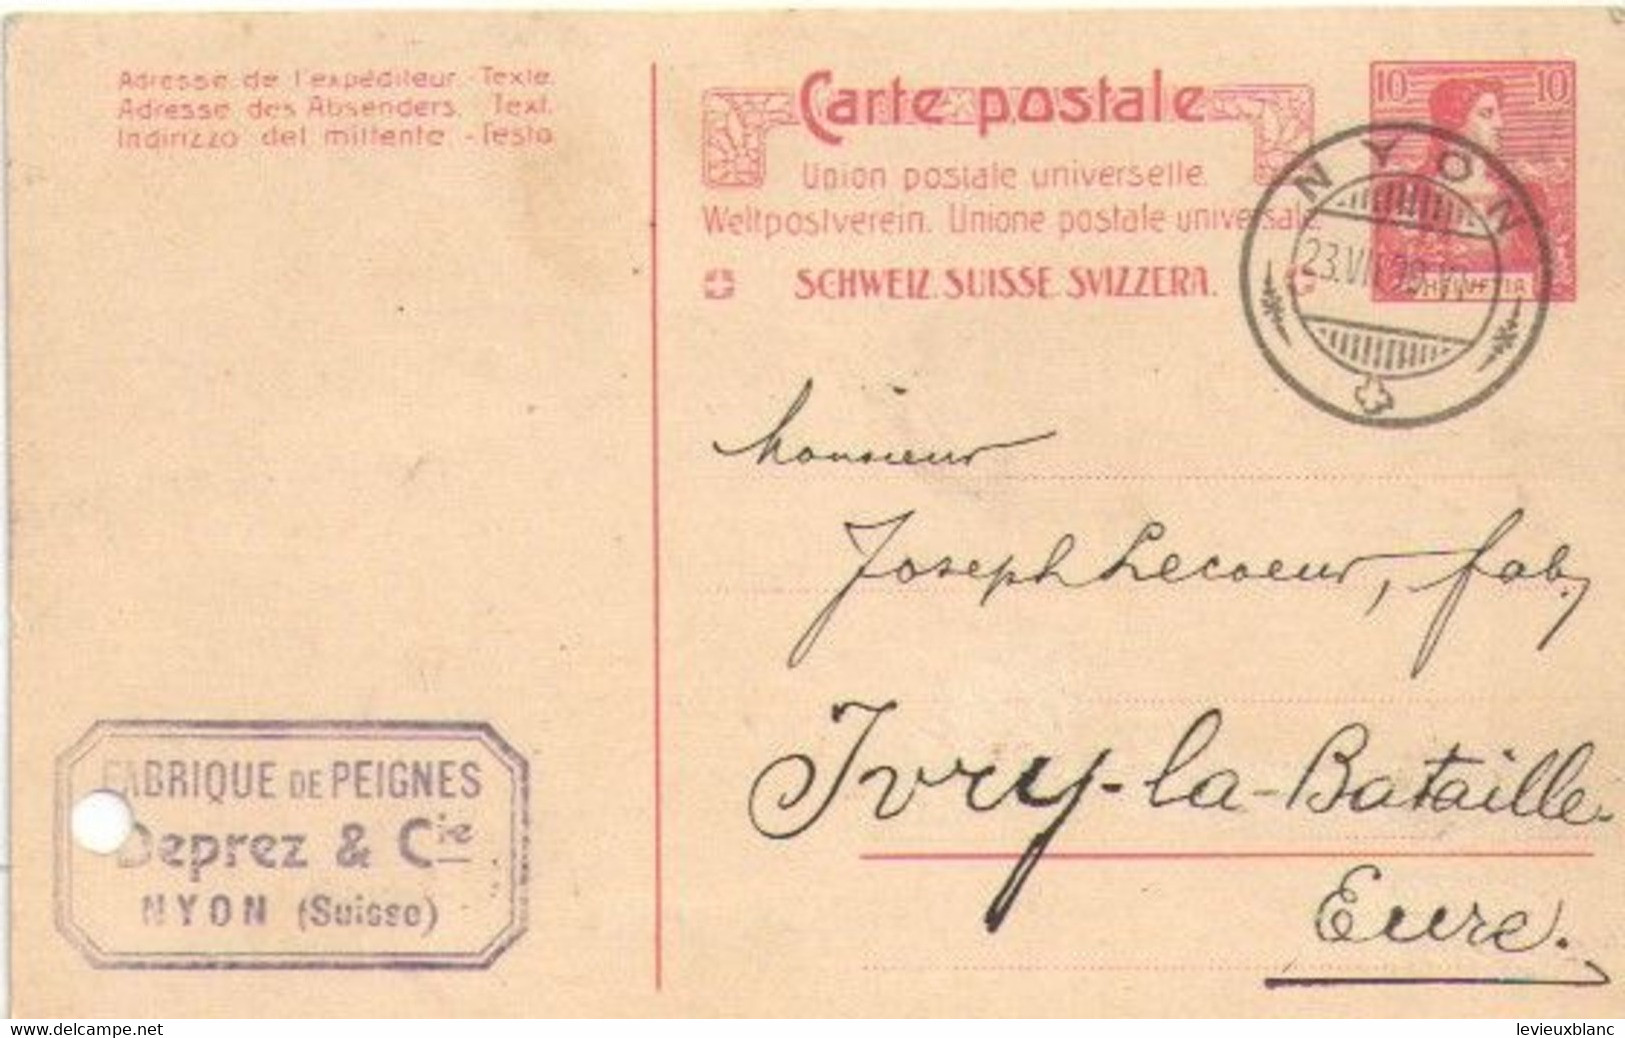 Fabrication De Peignes En Ivoire/Joseph LECOEUR/Ivry La Bataille/Commande/DEPREZ & Cie / NYON /SUISSE/1909     FACT495 - Zwitserland